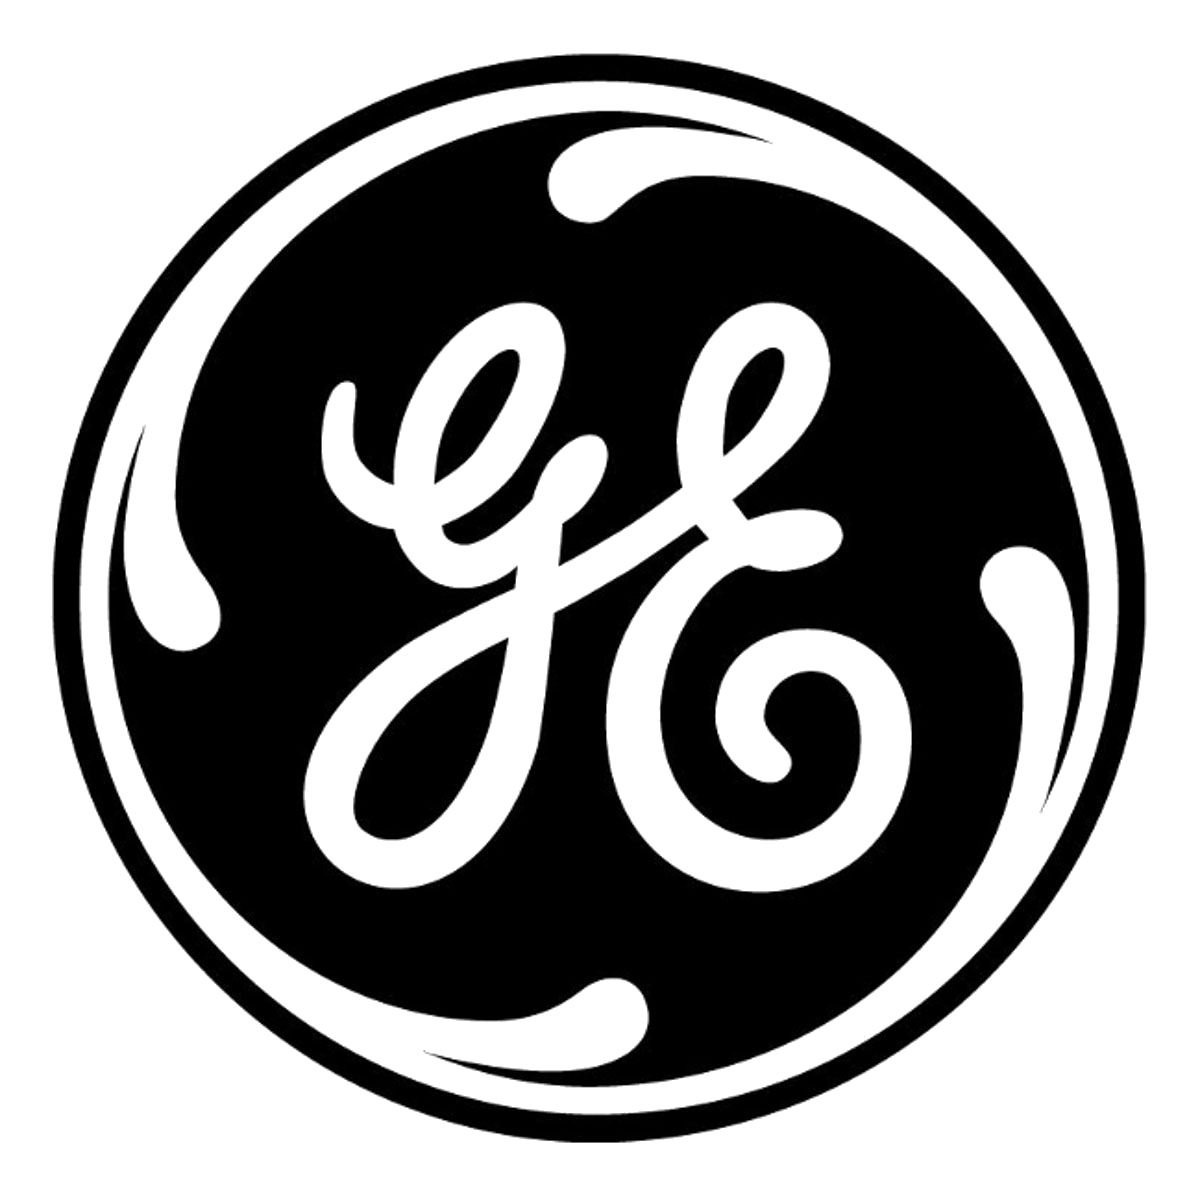 GE (logo)lrg.png